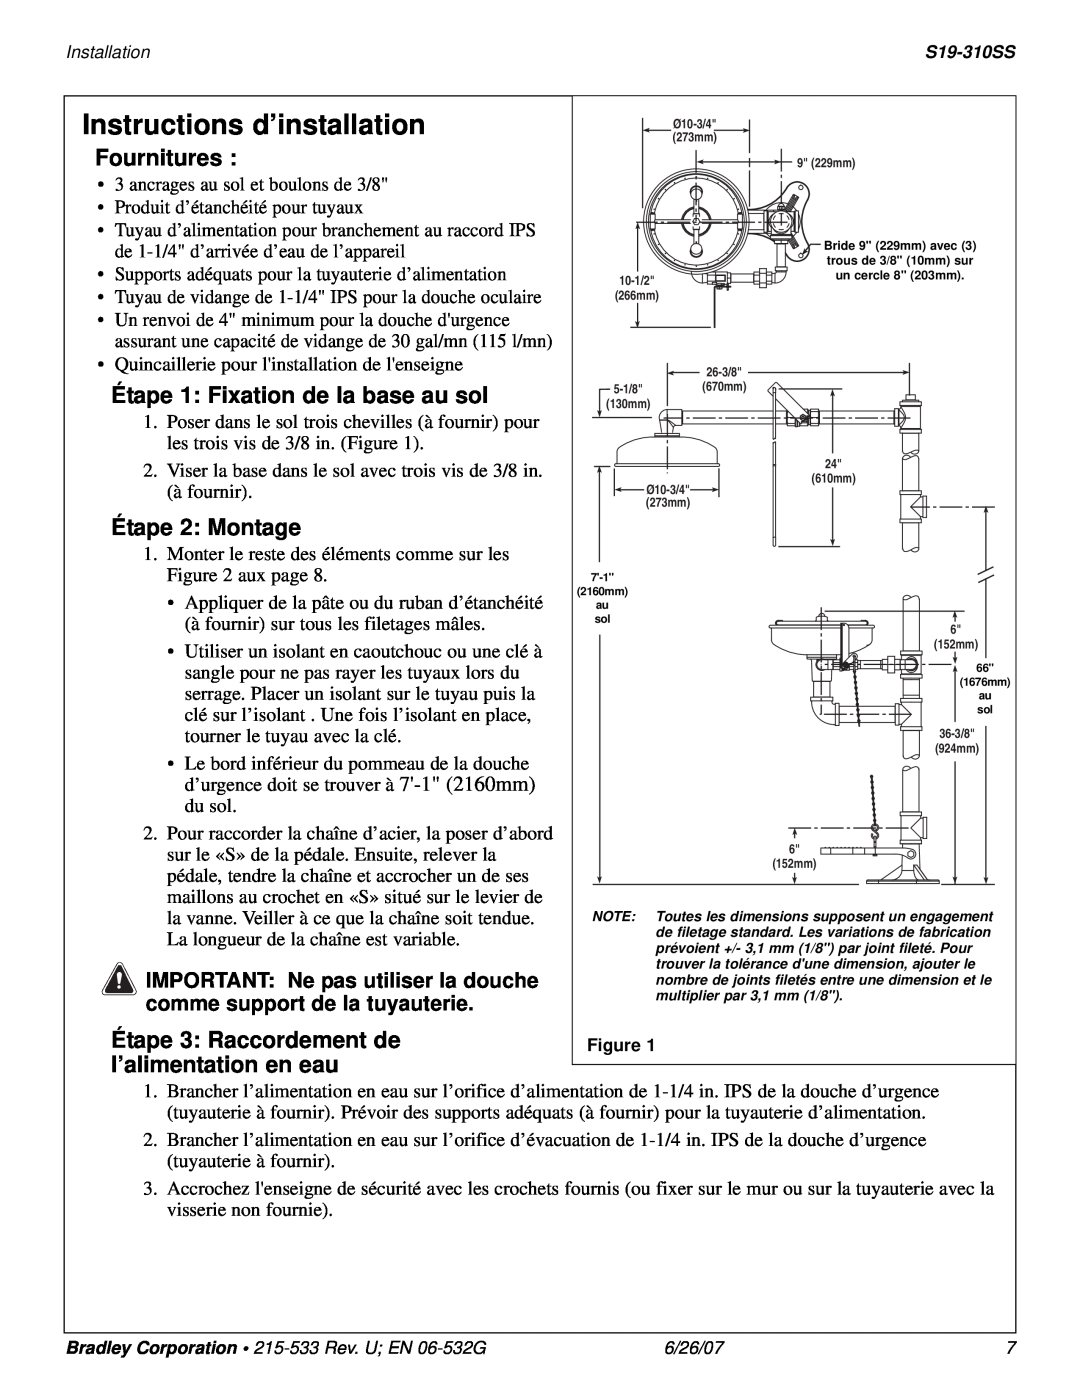 Bradley Smoker S19-310SS Instructions d’installation, Fournitures, Étape 1: Fixation de la base au sol, Étape 2 Montage 